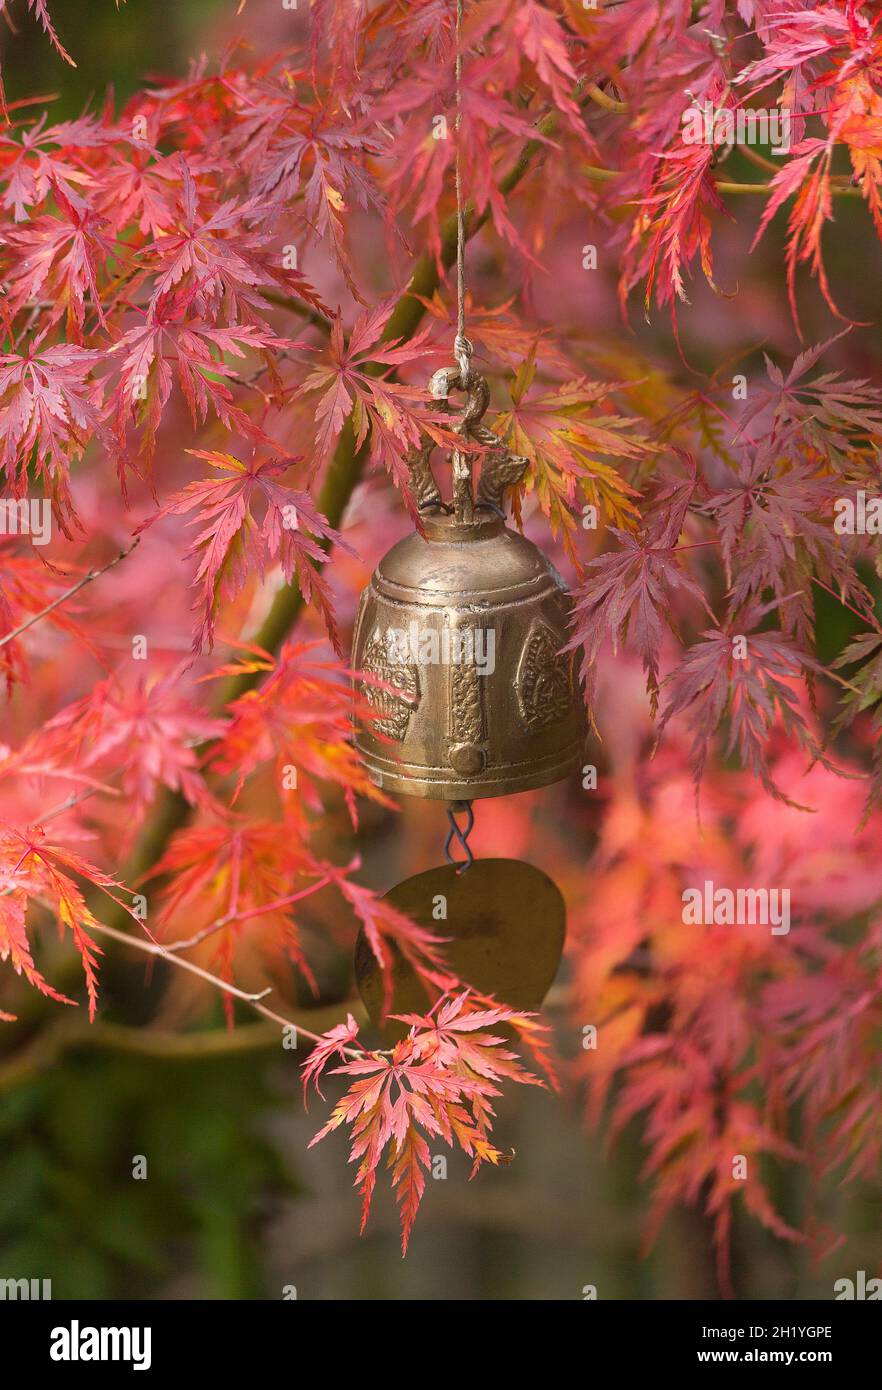 Garden bell ornamental amongst red Acer leaves, Autumn Stock Photo